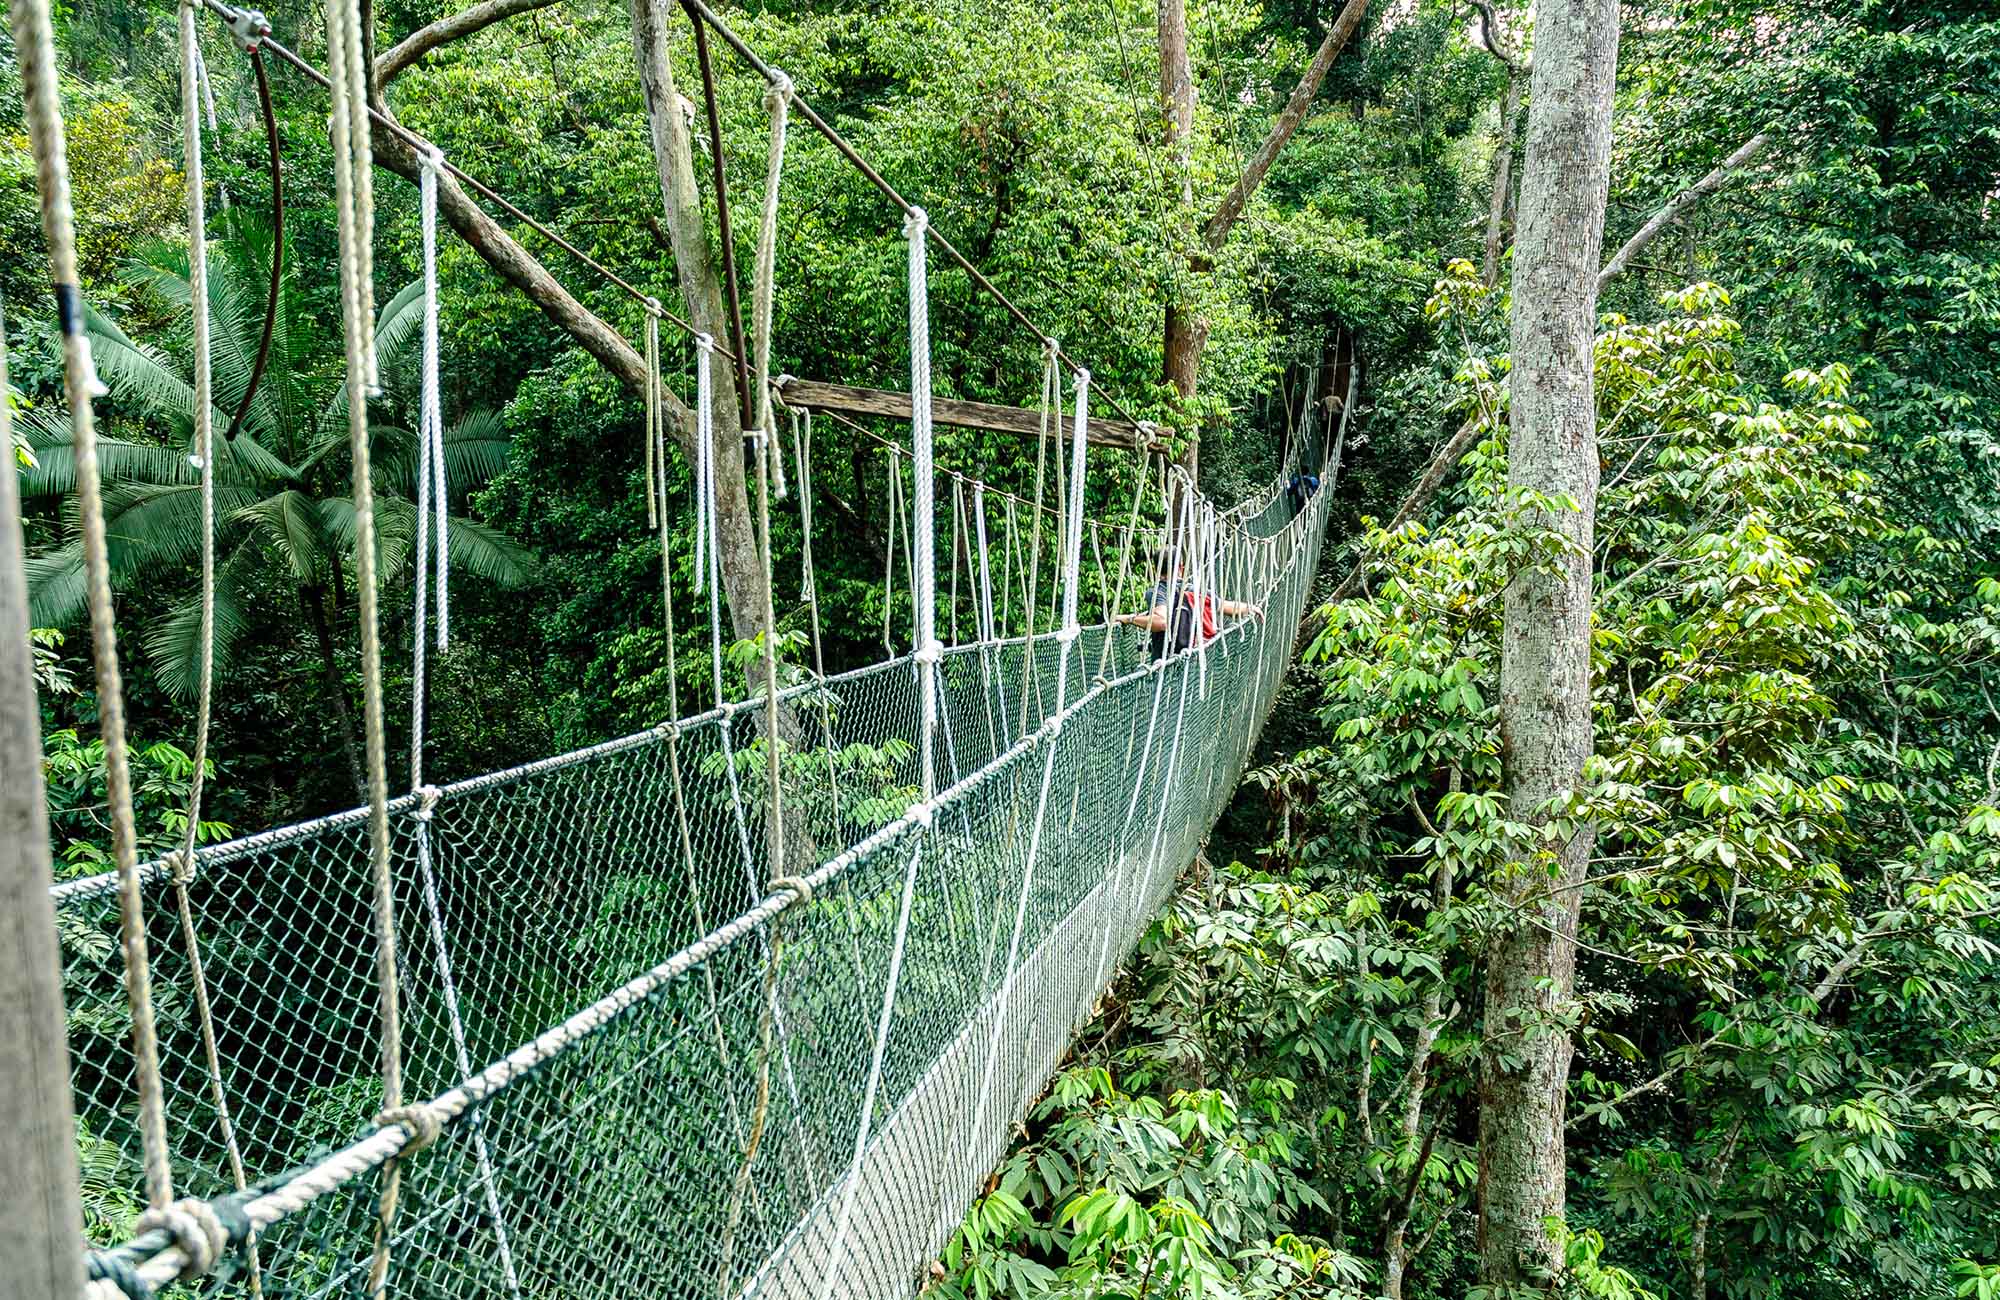 Res till regnskogen i Taman Negaras nationalpark i Malaysia